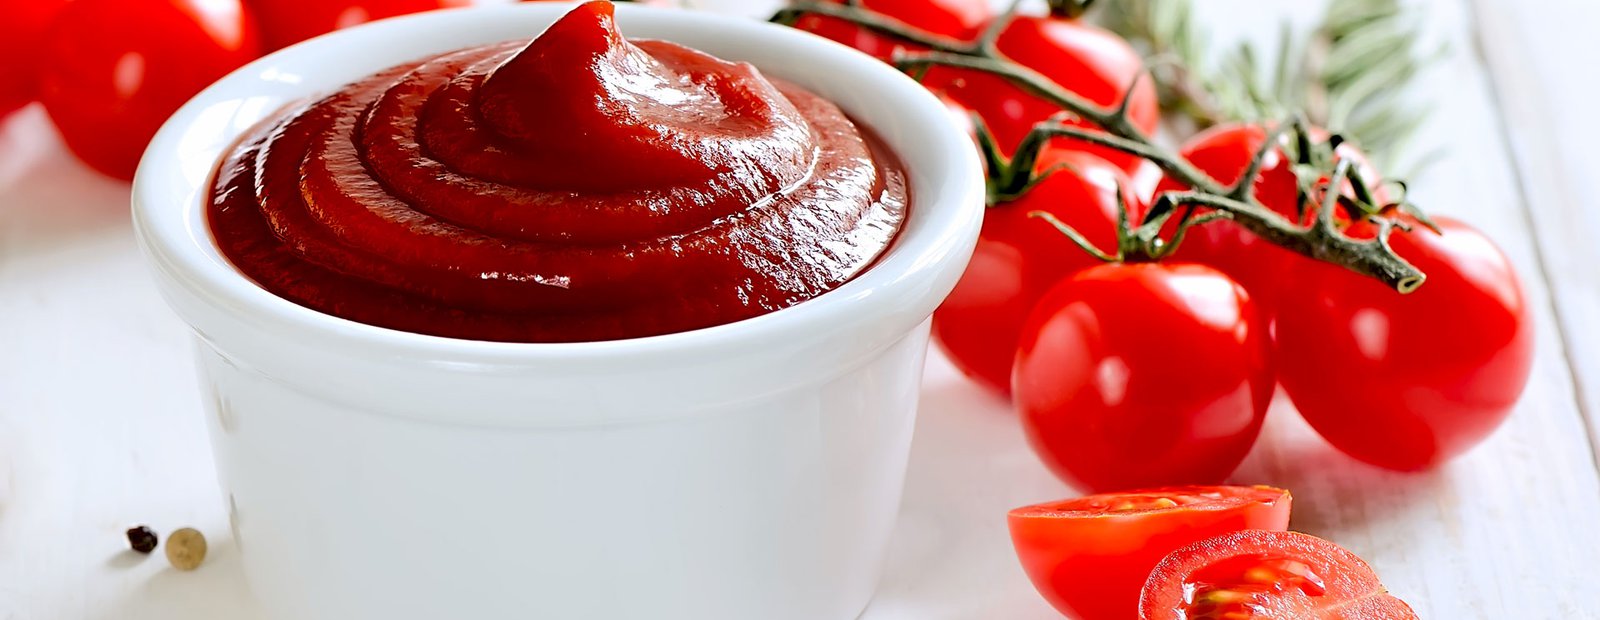 Una spruzzata di ketchup per vivere meglio